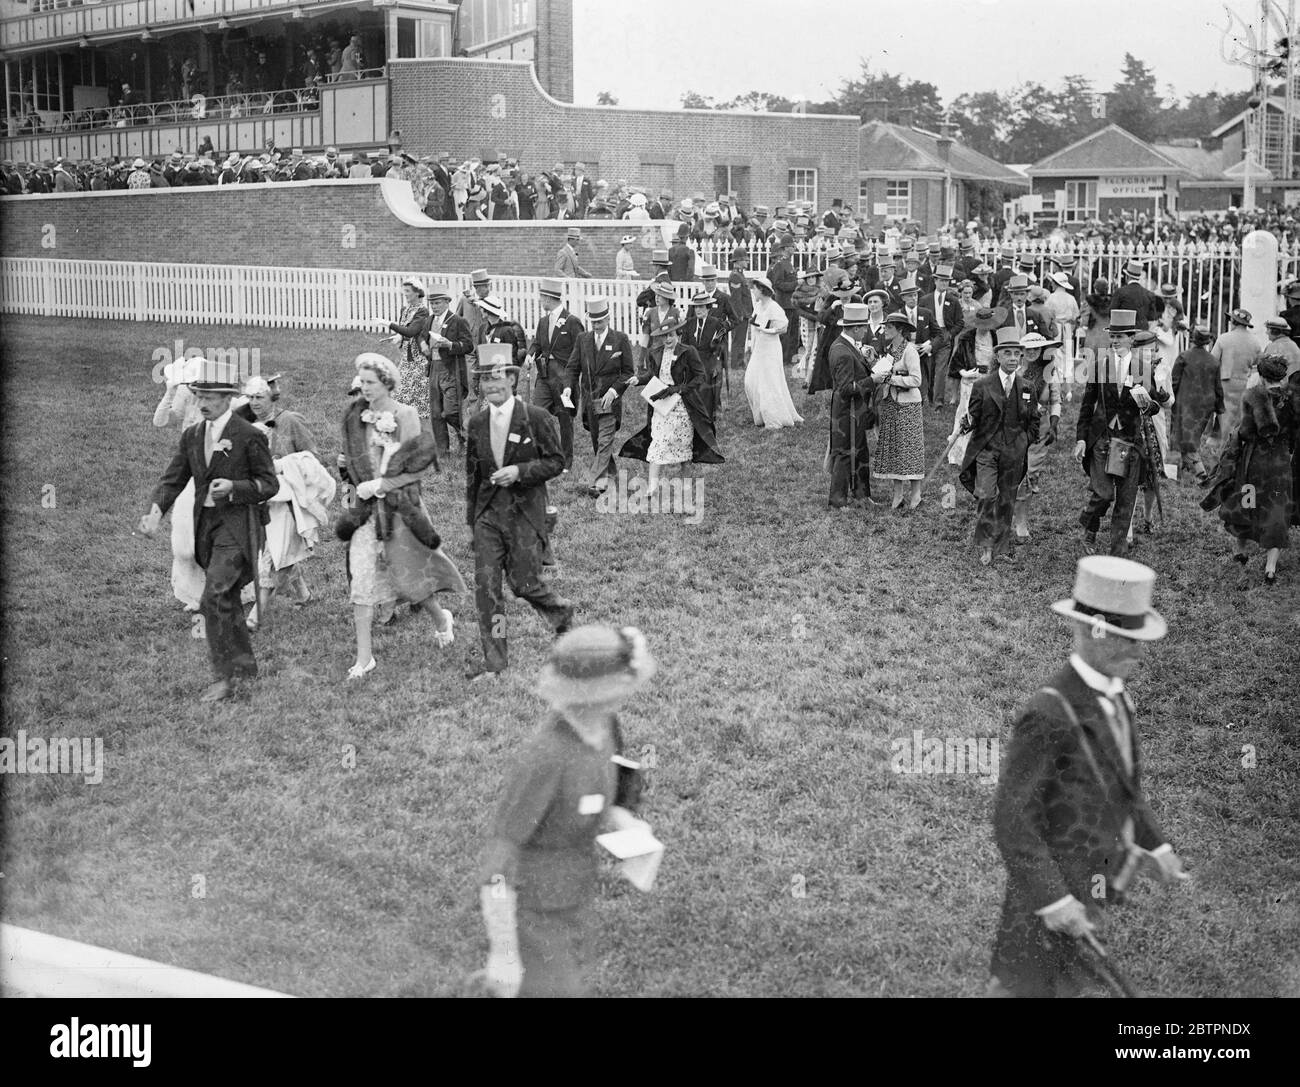 Sfilata di moda ad Ascot. Spettacoli fotografici: La folla alla moda che attraversa il corso il secondo giorno della riunione Ascot. 16 giugno 1937 Foto Stock